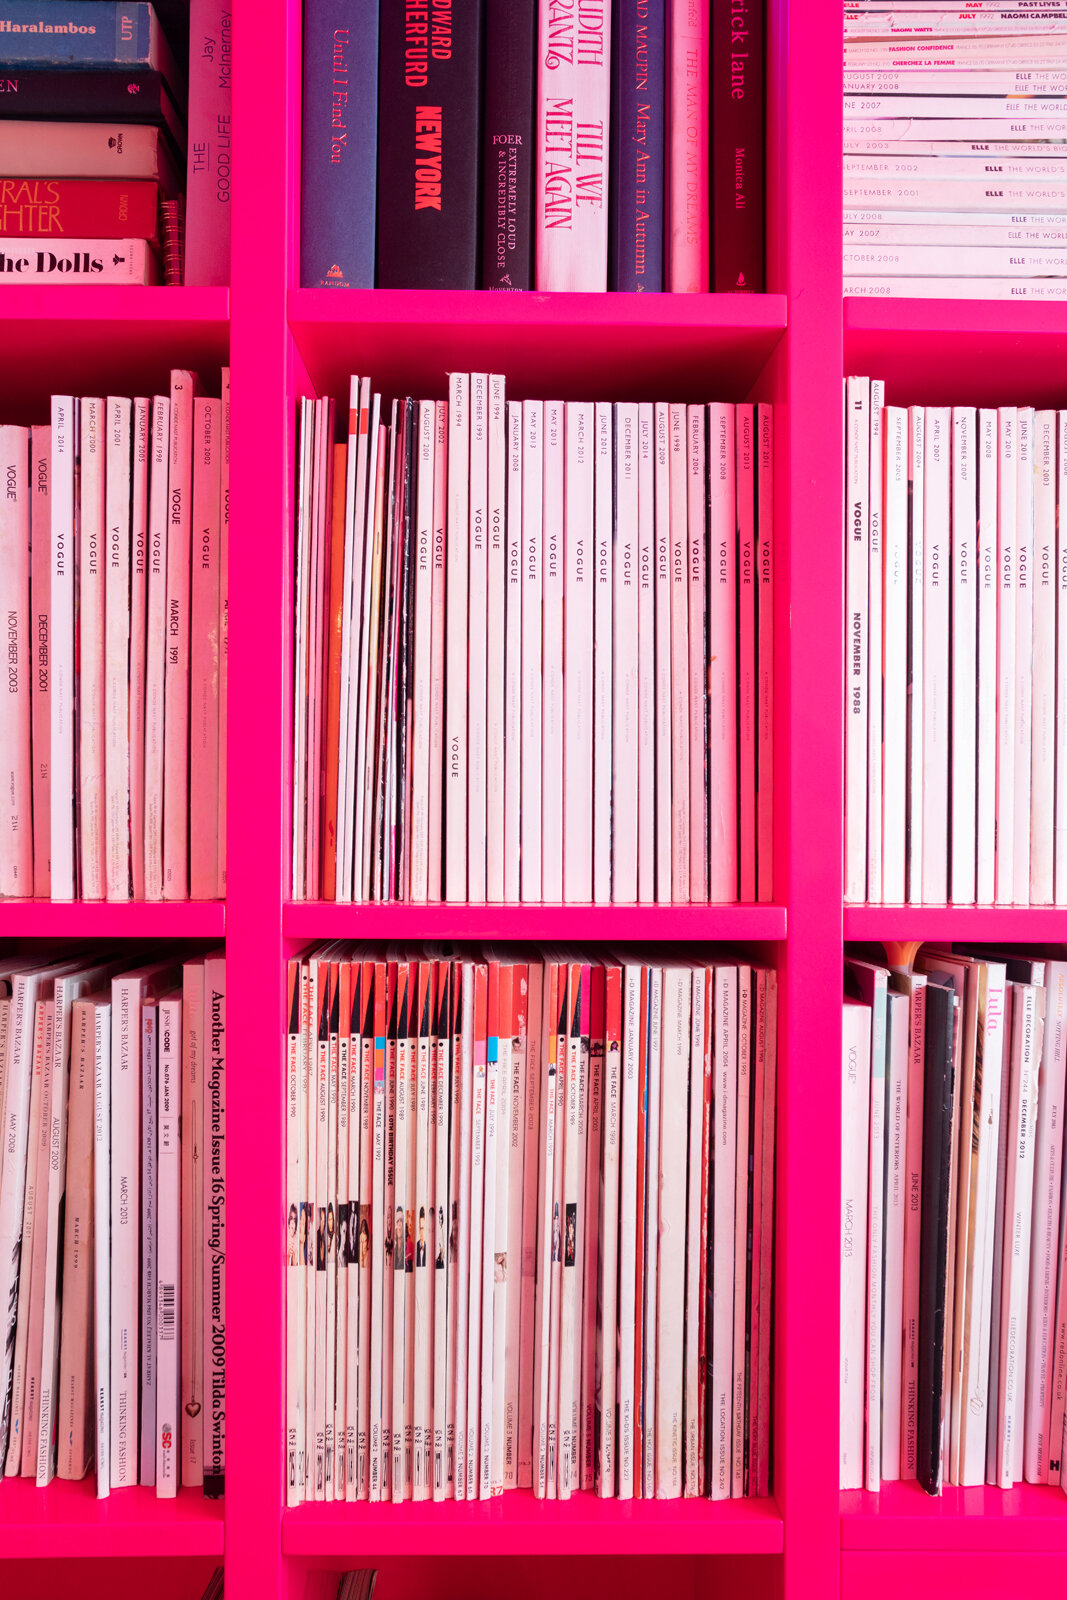 Hot pink book shelves